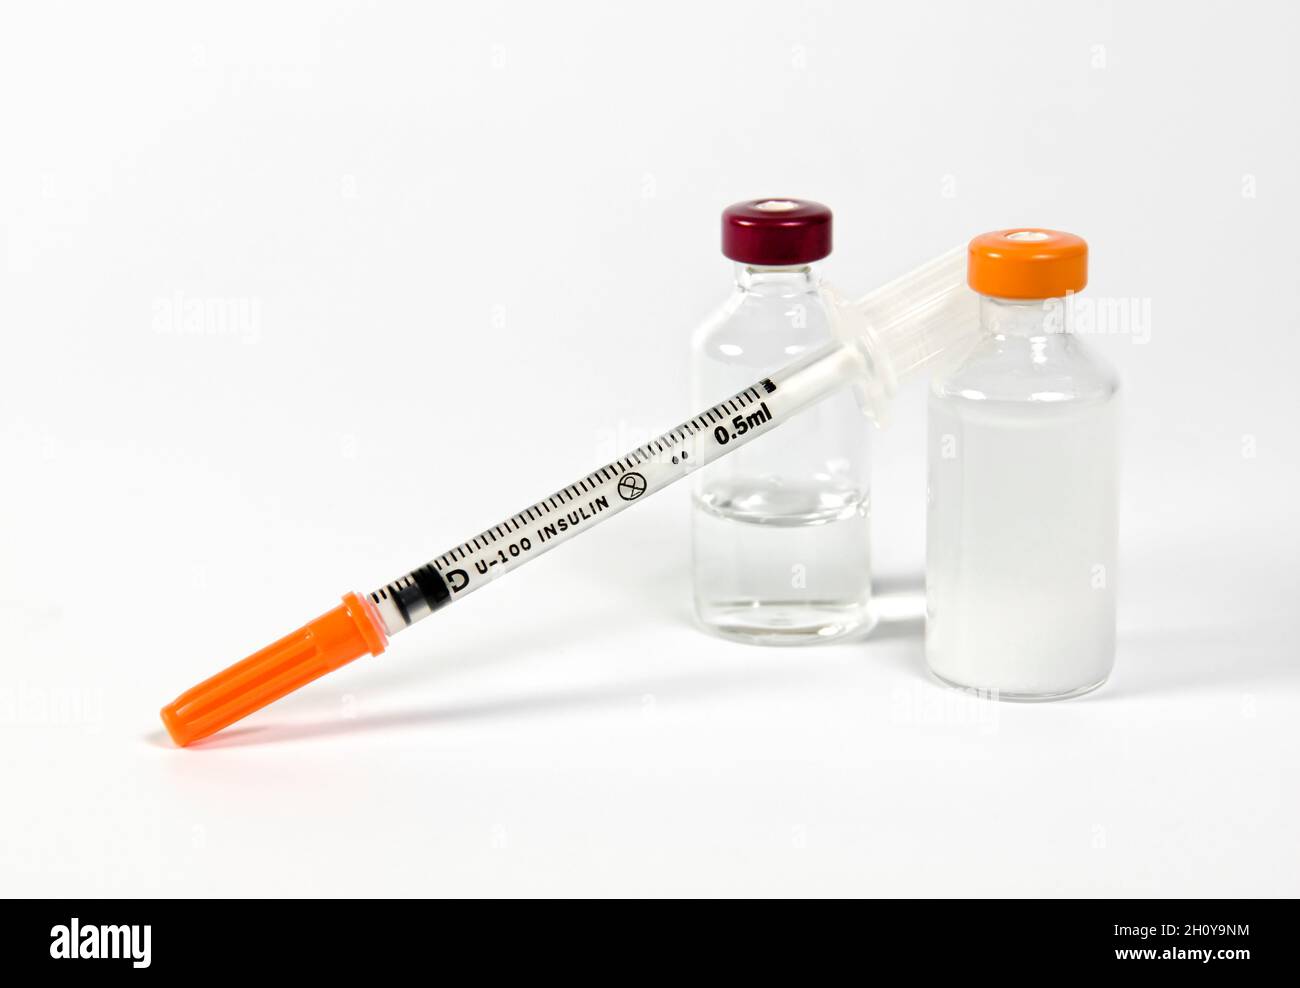 Kit de inyección de insulina diabética con vial de insulina de acción corta y vial de insulina de acción larga Foto de stock